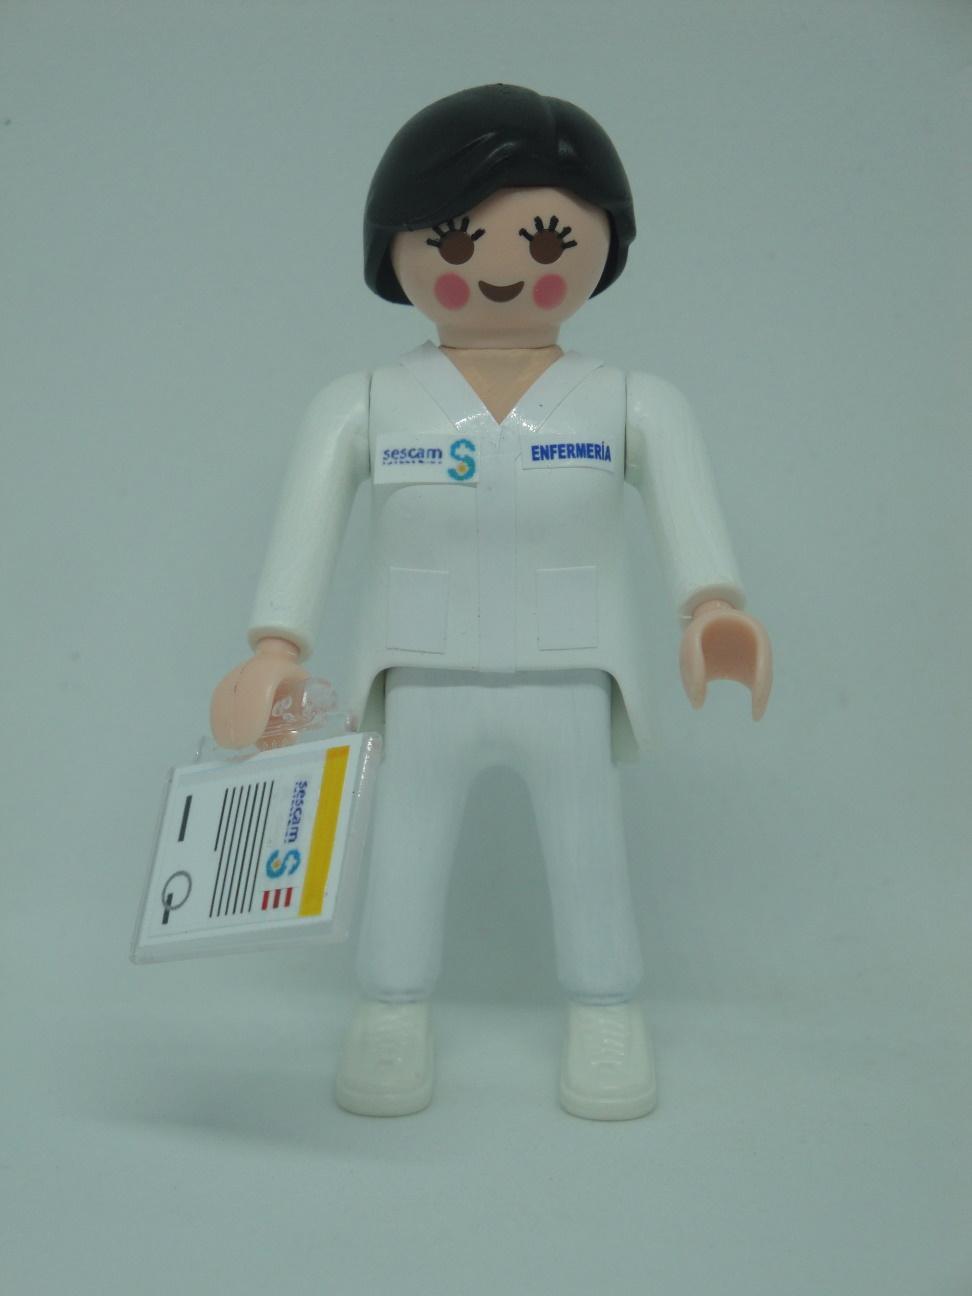 Playmobil personalizado con el uniforme de Enfermera del SESCAM servicio de salud de Castilla la Mancha mujer